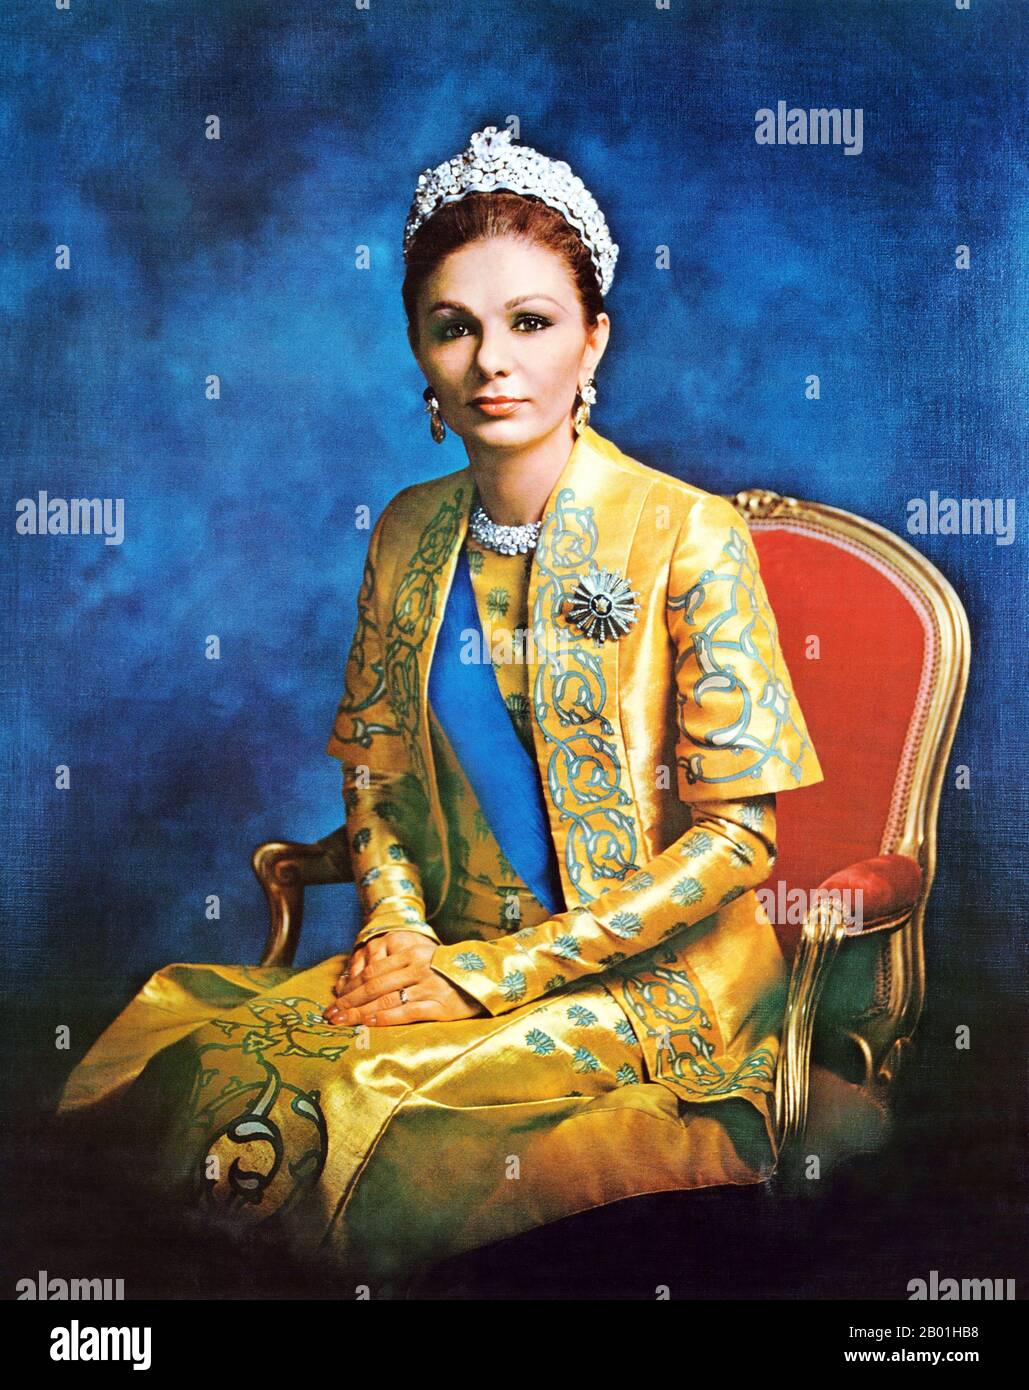 Iran/Persia: Ritratto ufficiale dell'imperatrice Farah Pahlavi (nata il 13 ottobre 1938), moglie e vedova di Mohammad Reza Pahlavi (1919-1979), ultimo scià dell'Iran, 1973. Farah Pahlavi, nata Farah Diba, è l'ex regina e imperatrice dell'Iran. È la vedova di Mohammad Reza Pahlavi, lo scià dell'Iran, e unica imperatrice (Shahbanou) dell'Iran moderno. Fu regina consorte dell'Iran dal 1959 al 1967 e imperatrice consorte dal 1967 fino all'esilio nel 1979. Foto Stock